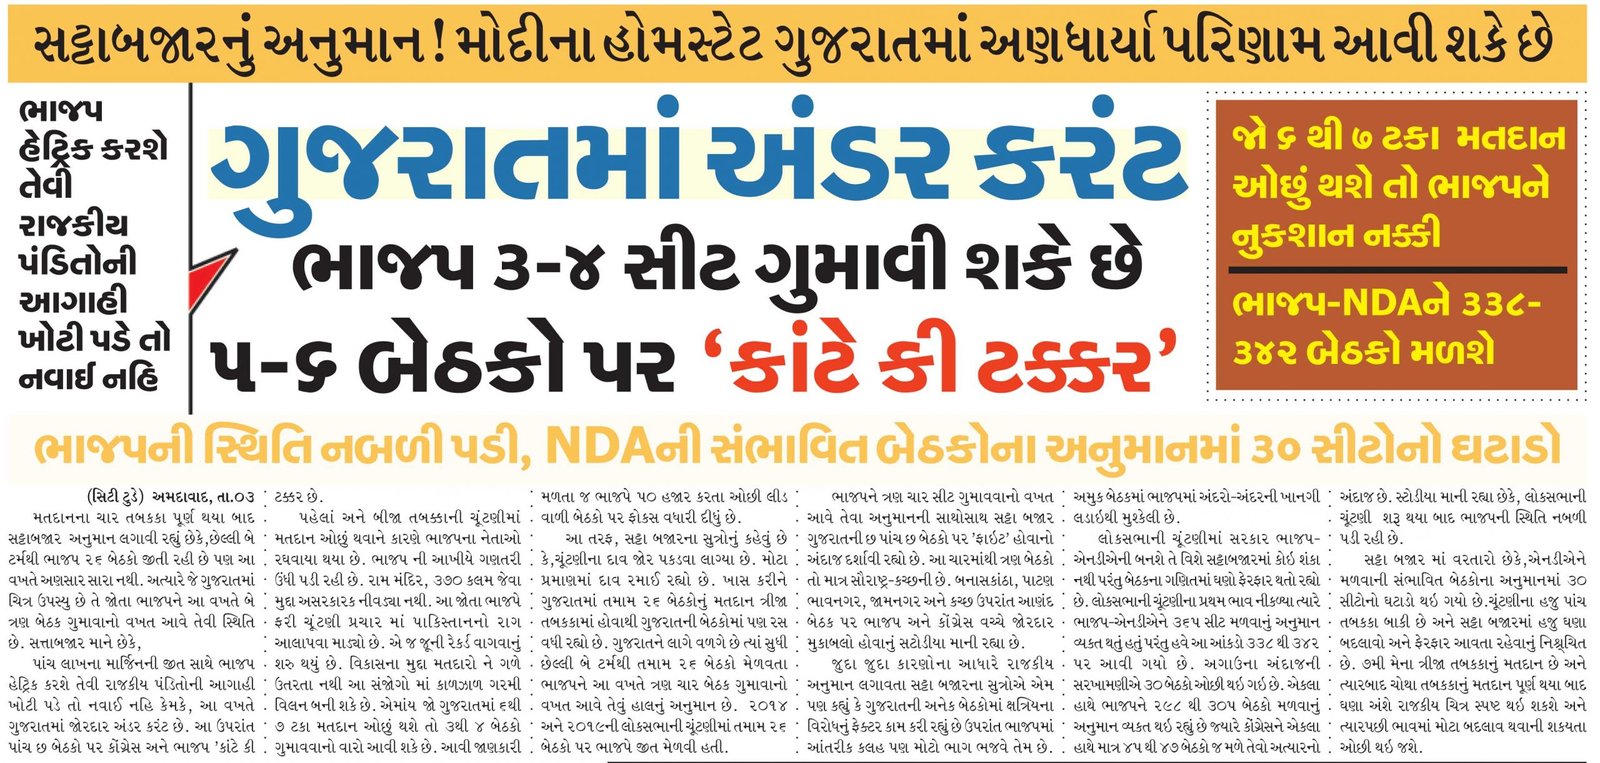 ગુજરાતમાં અંડર કરંટ ભાજપ ૩-૪ સીટ ગુમાવી શકે છે ૫-૬ બેઠકો પર ‘કાંટે કી ટક્કર'